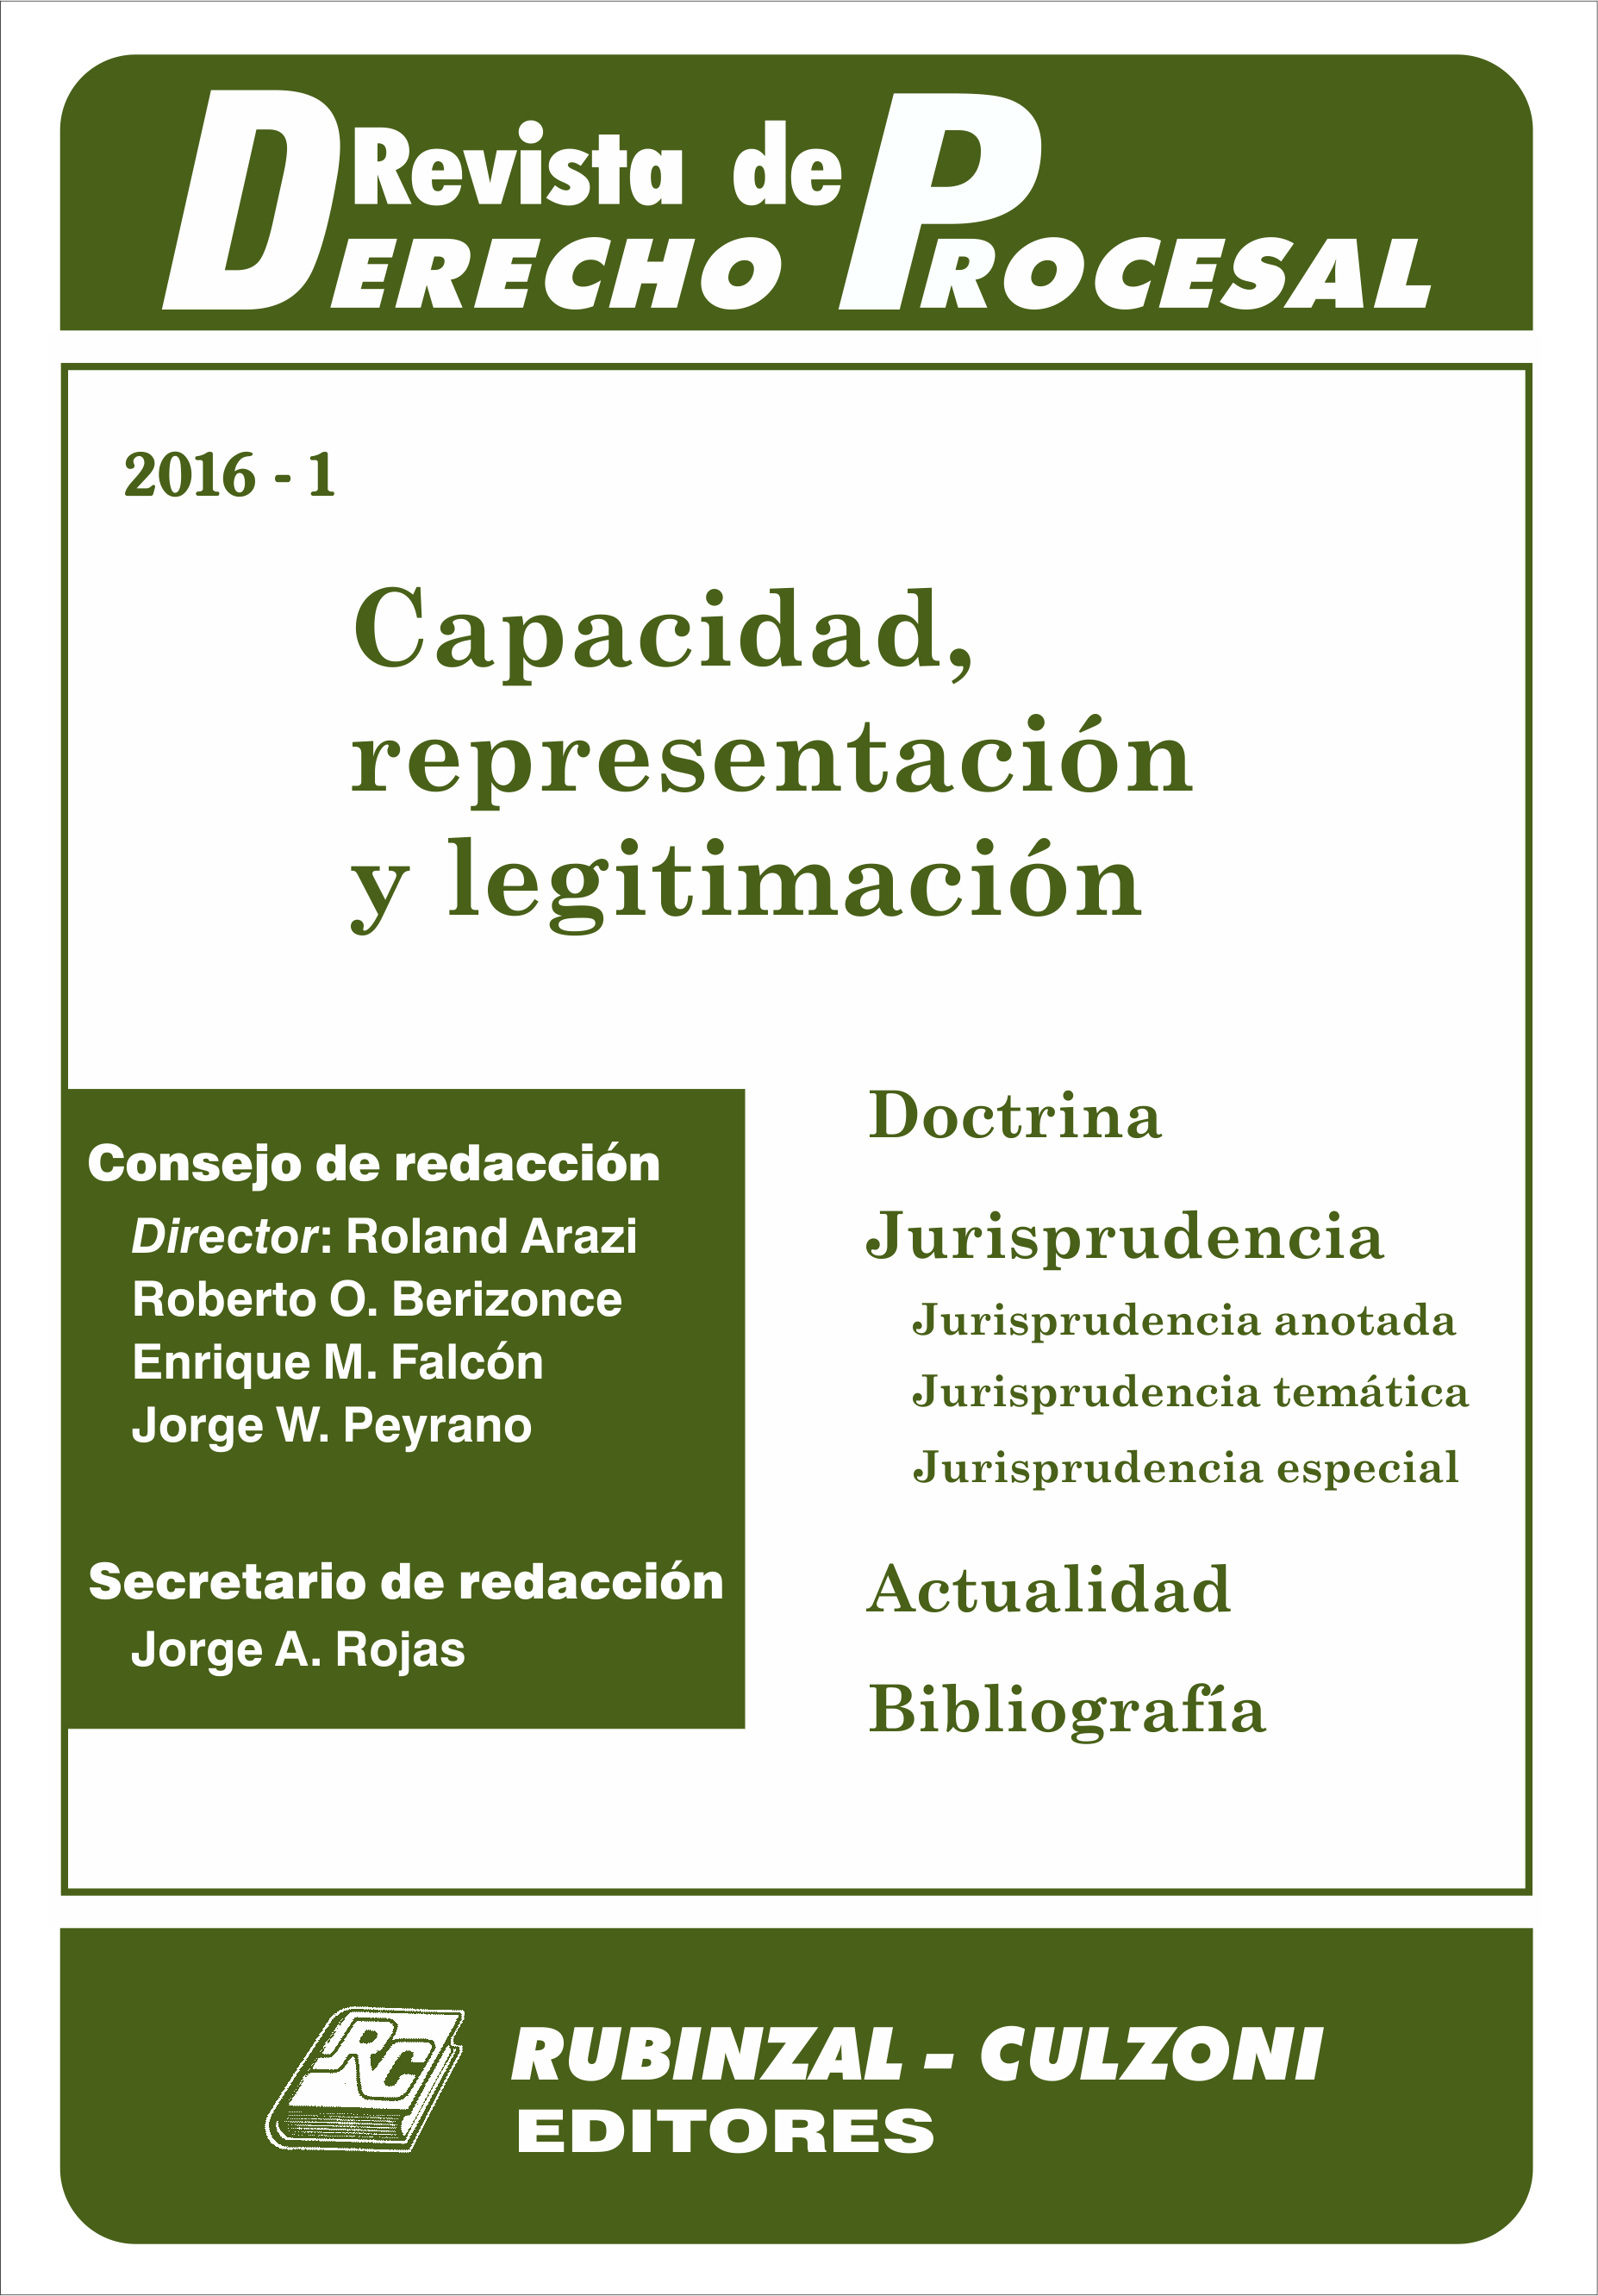 Revista de Derecho Procesal - Capacidad, representación y legitimación